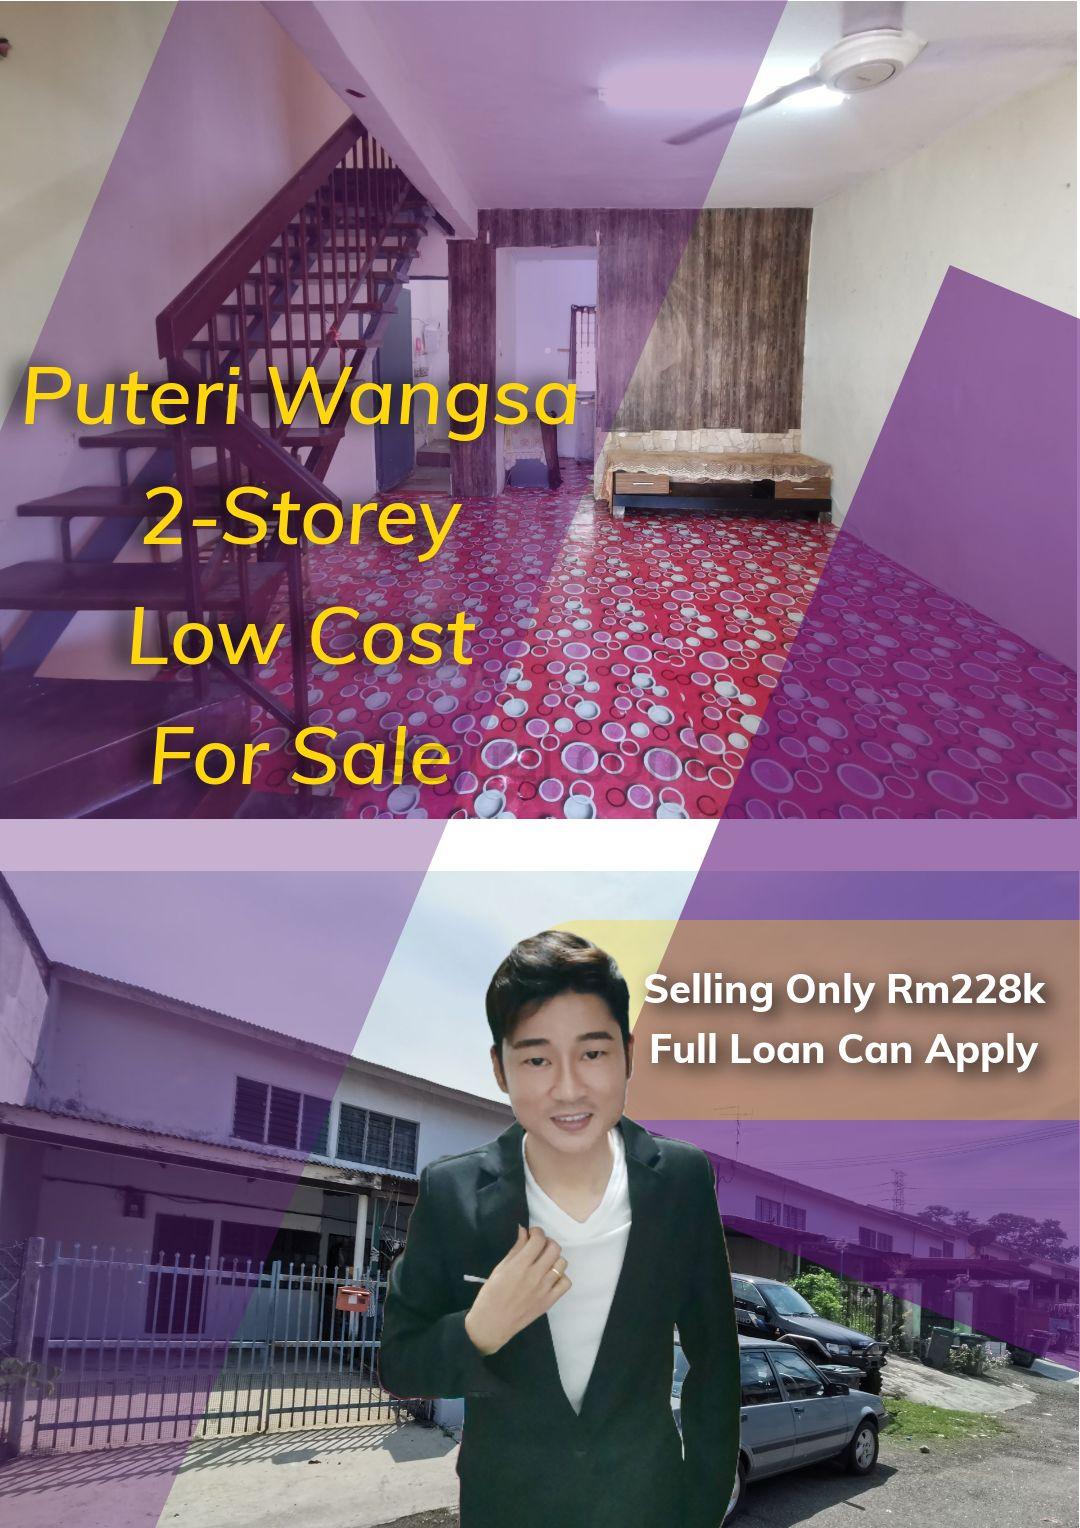 Puteri Wangsa 2-Storey Low Cost House